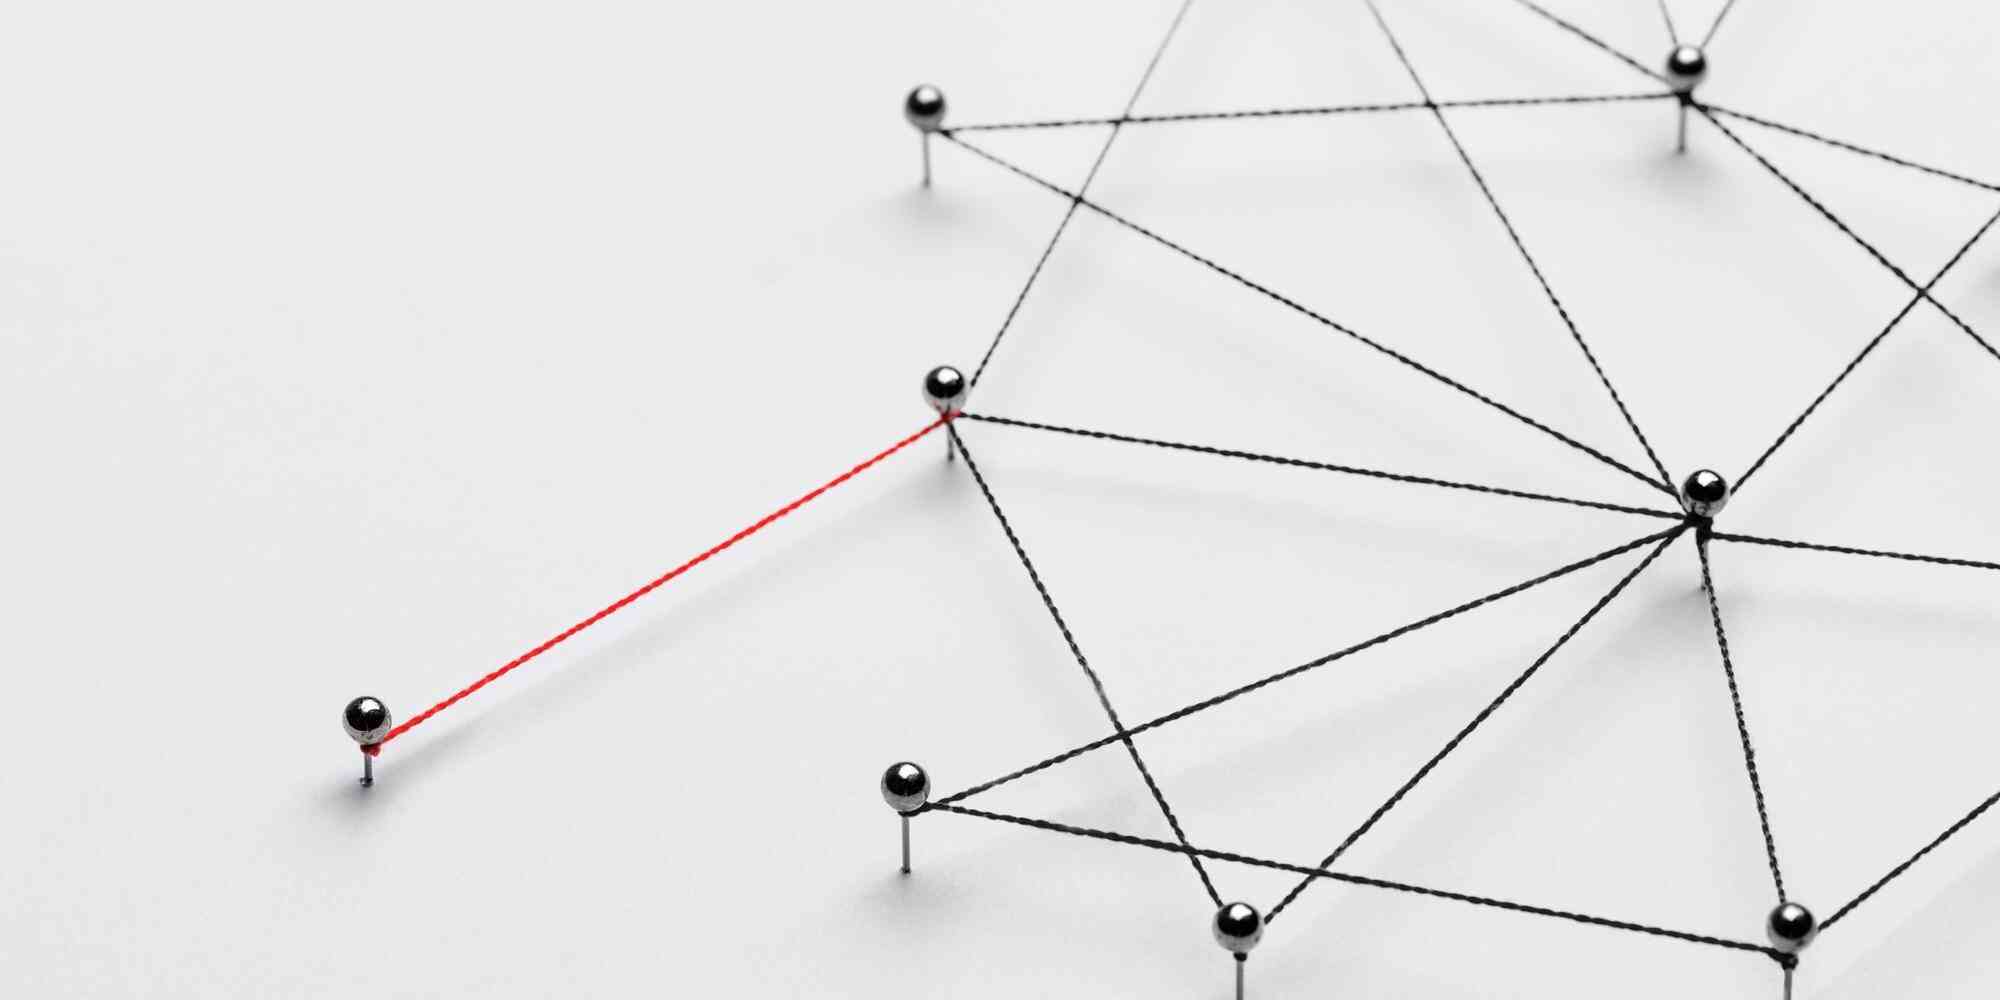 图中是一个黑色的网状结构，用绳子连接着各个点，其中有一根红色的线连接了两个点